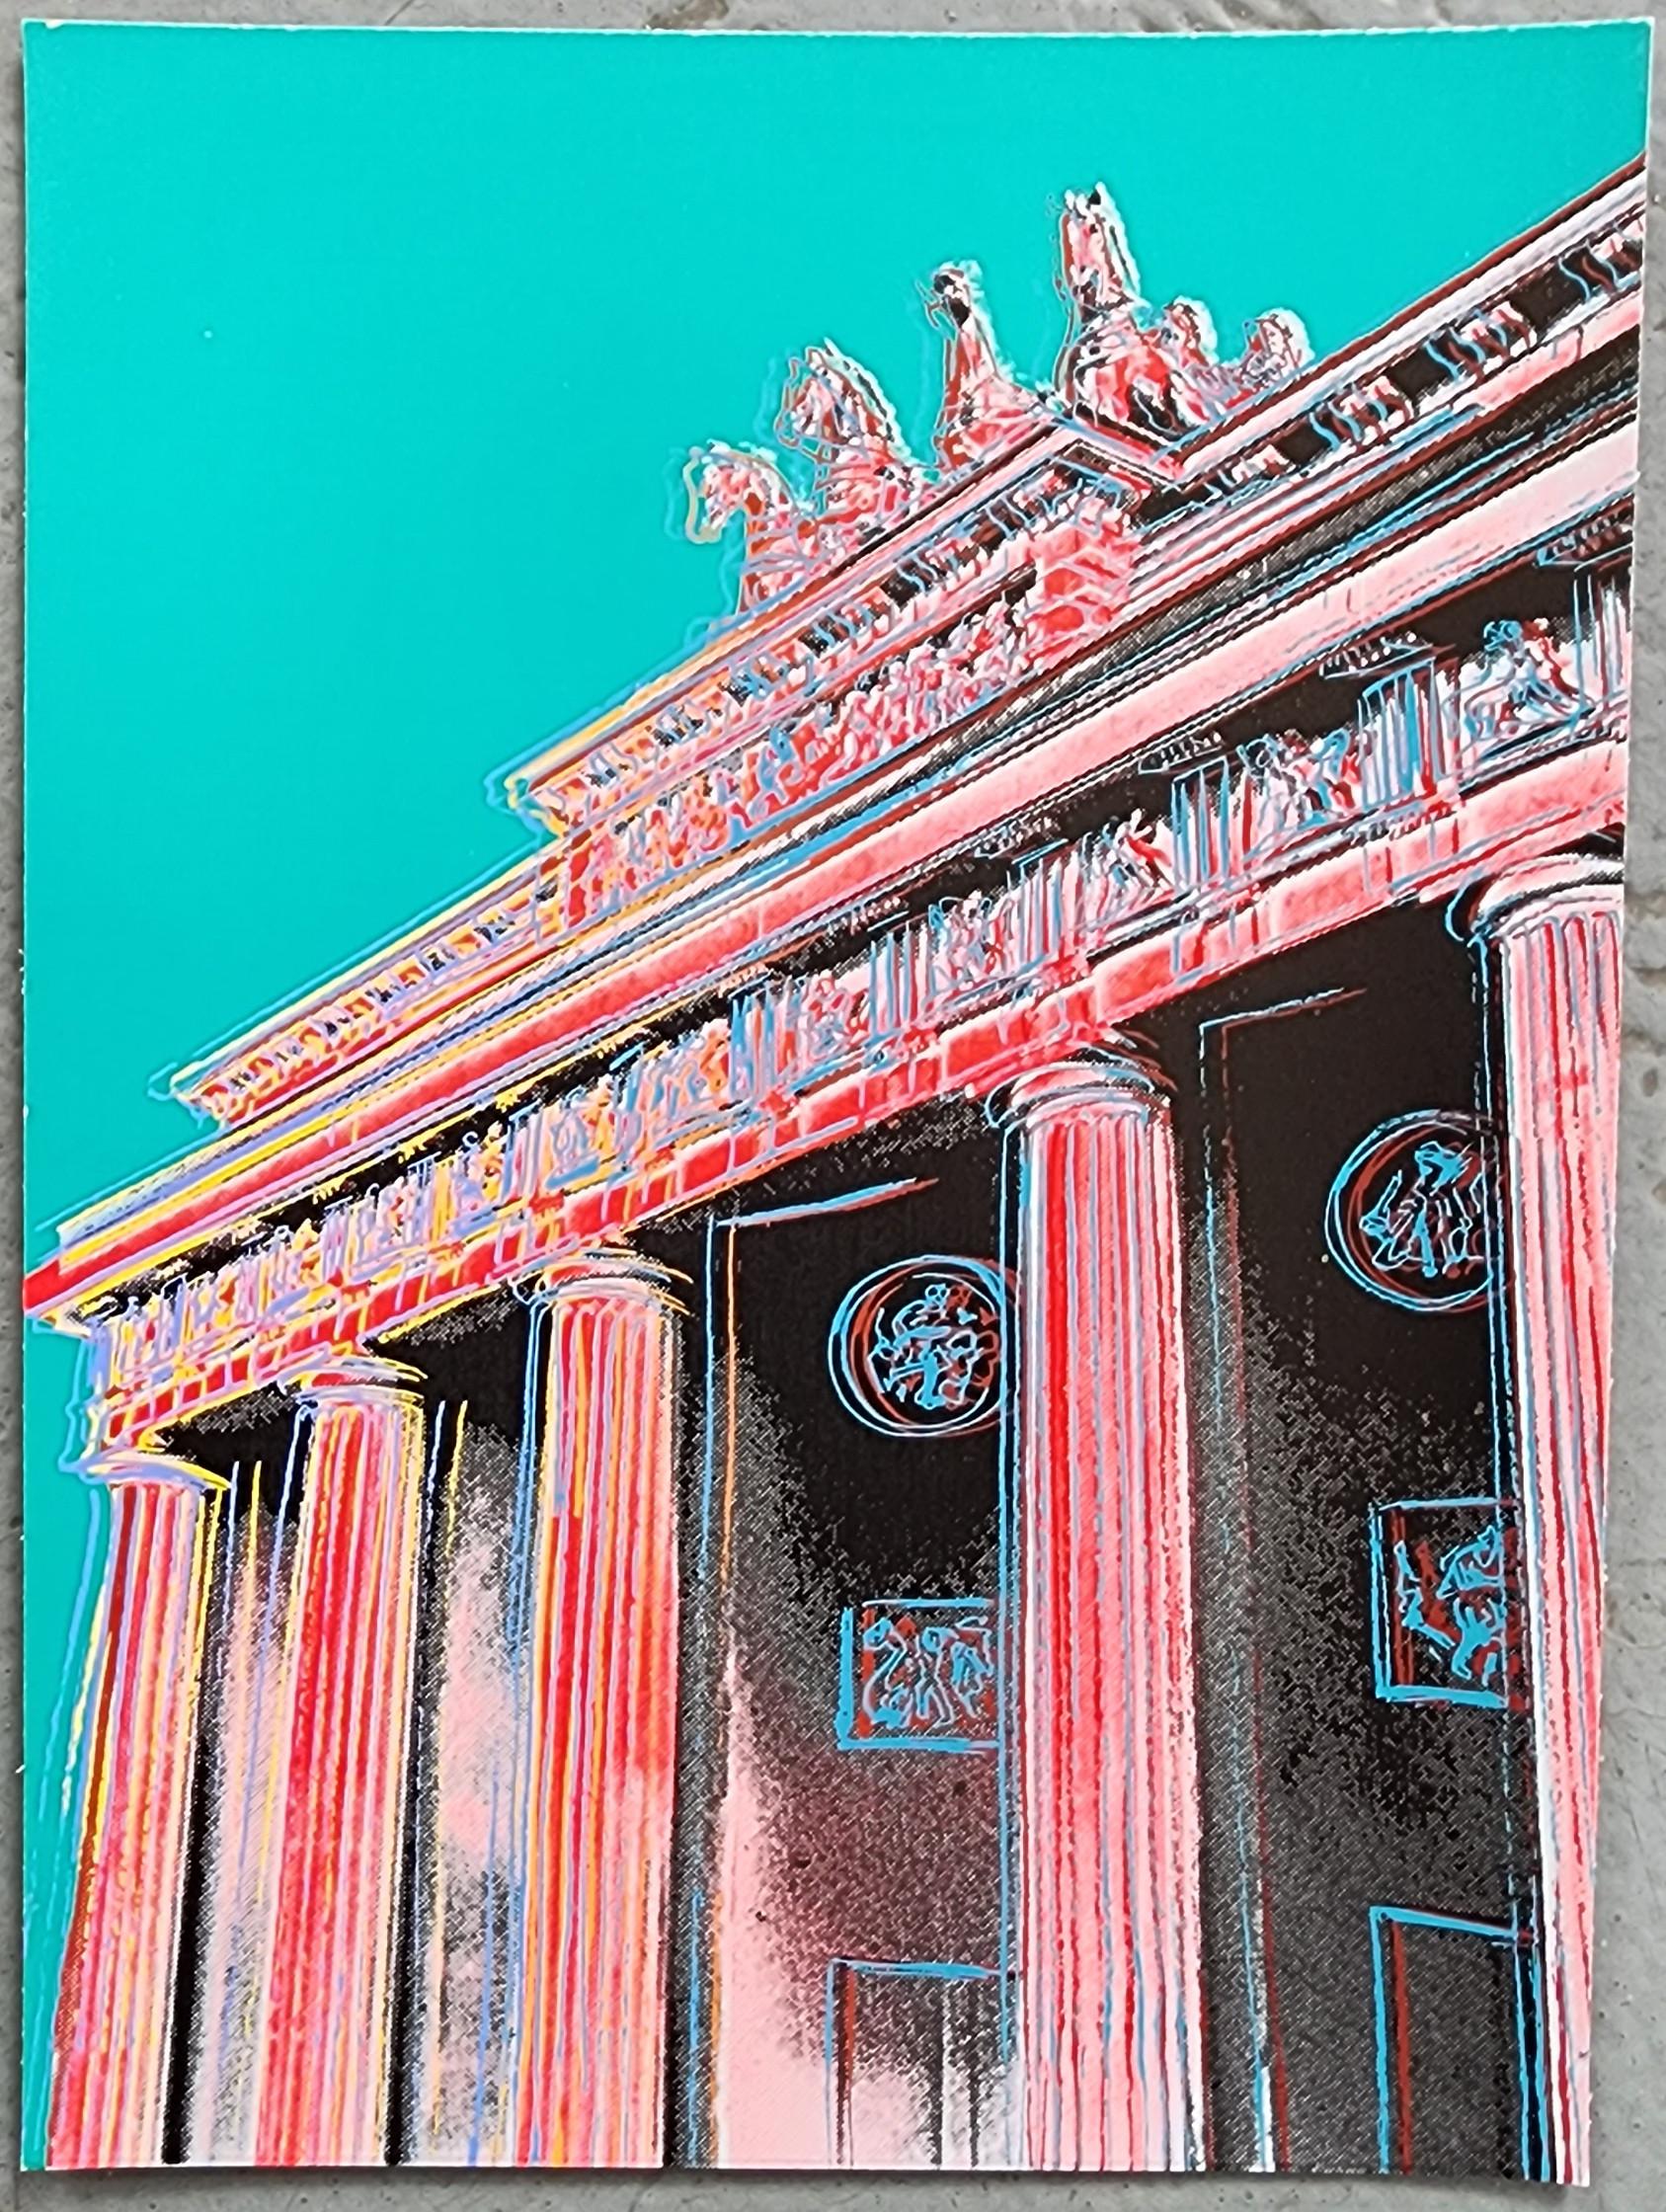 Porte de Brandebourg (rouge, teintes sarcelles - Brandenburger Tor) (40% DE RÉDUCTION SUR LE PRIX DE LISTE) - Print de Jurgen Kuhl 